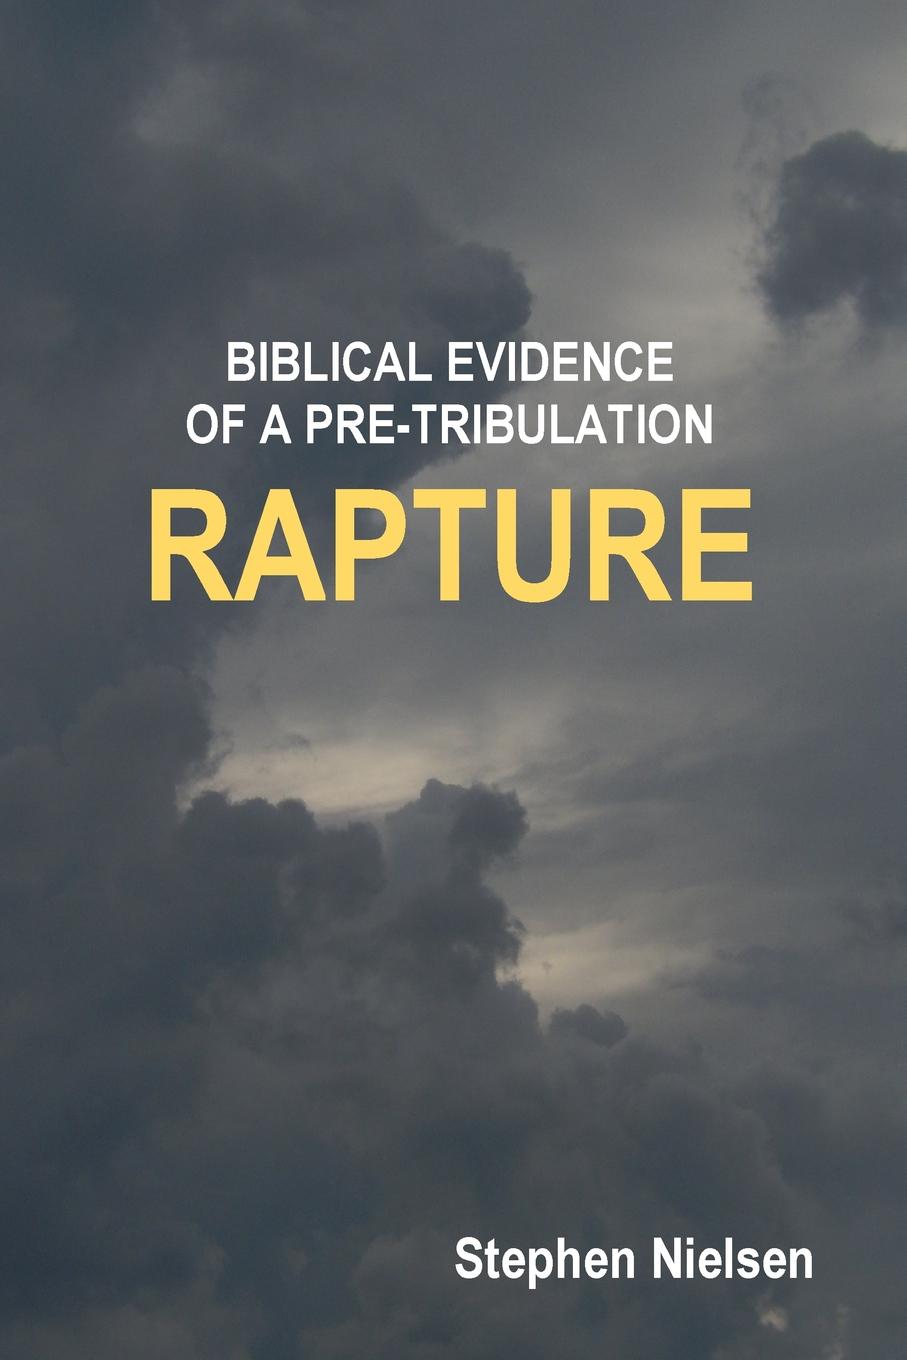 Stephen Nielsen BIBLICAL EVIDENCE OF A PRE-TRIBULATION RAPTURE